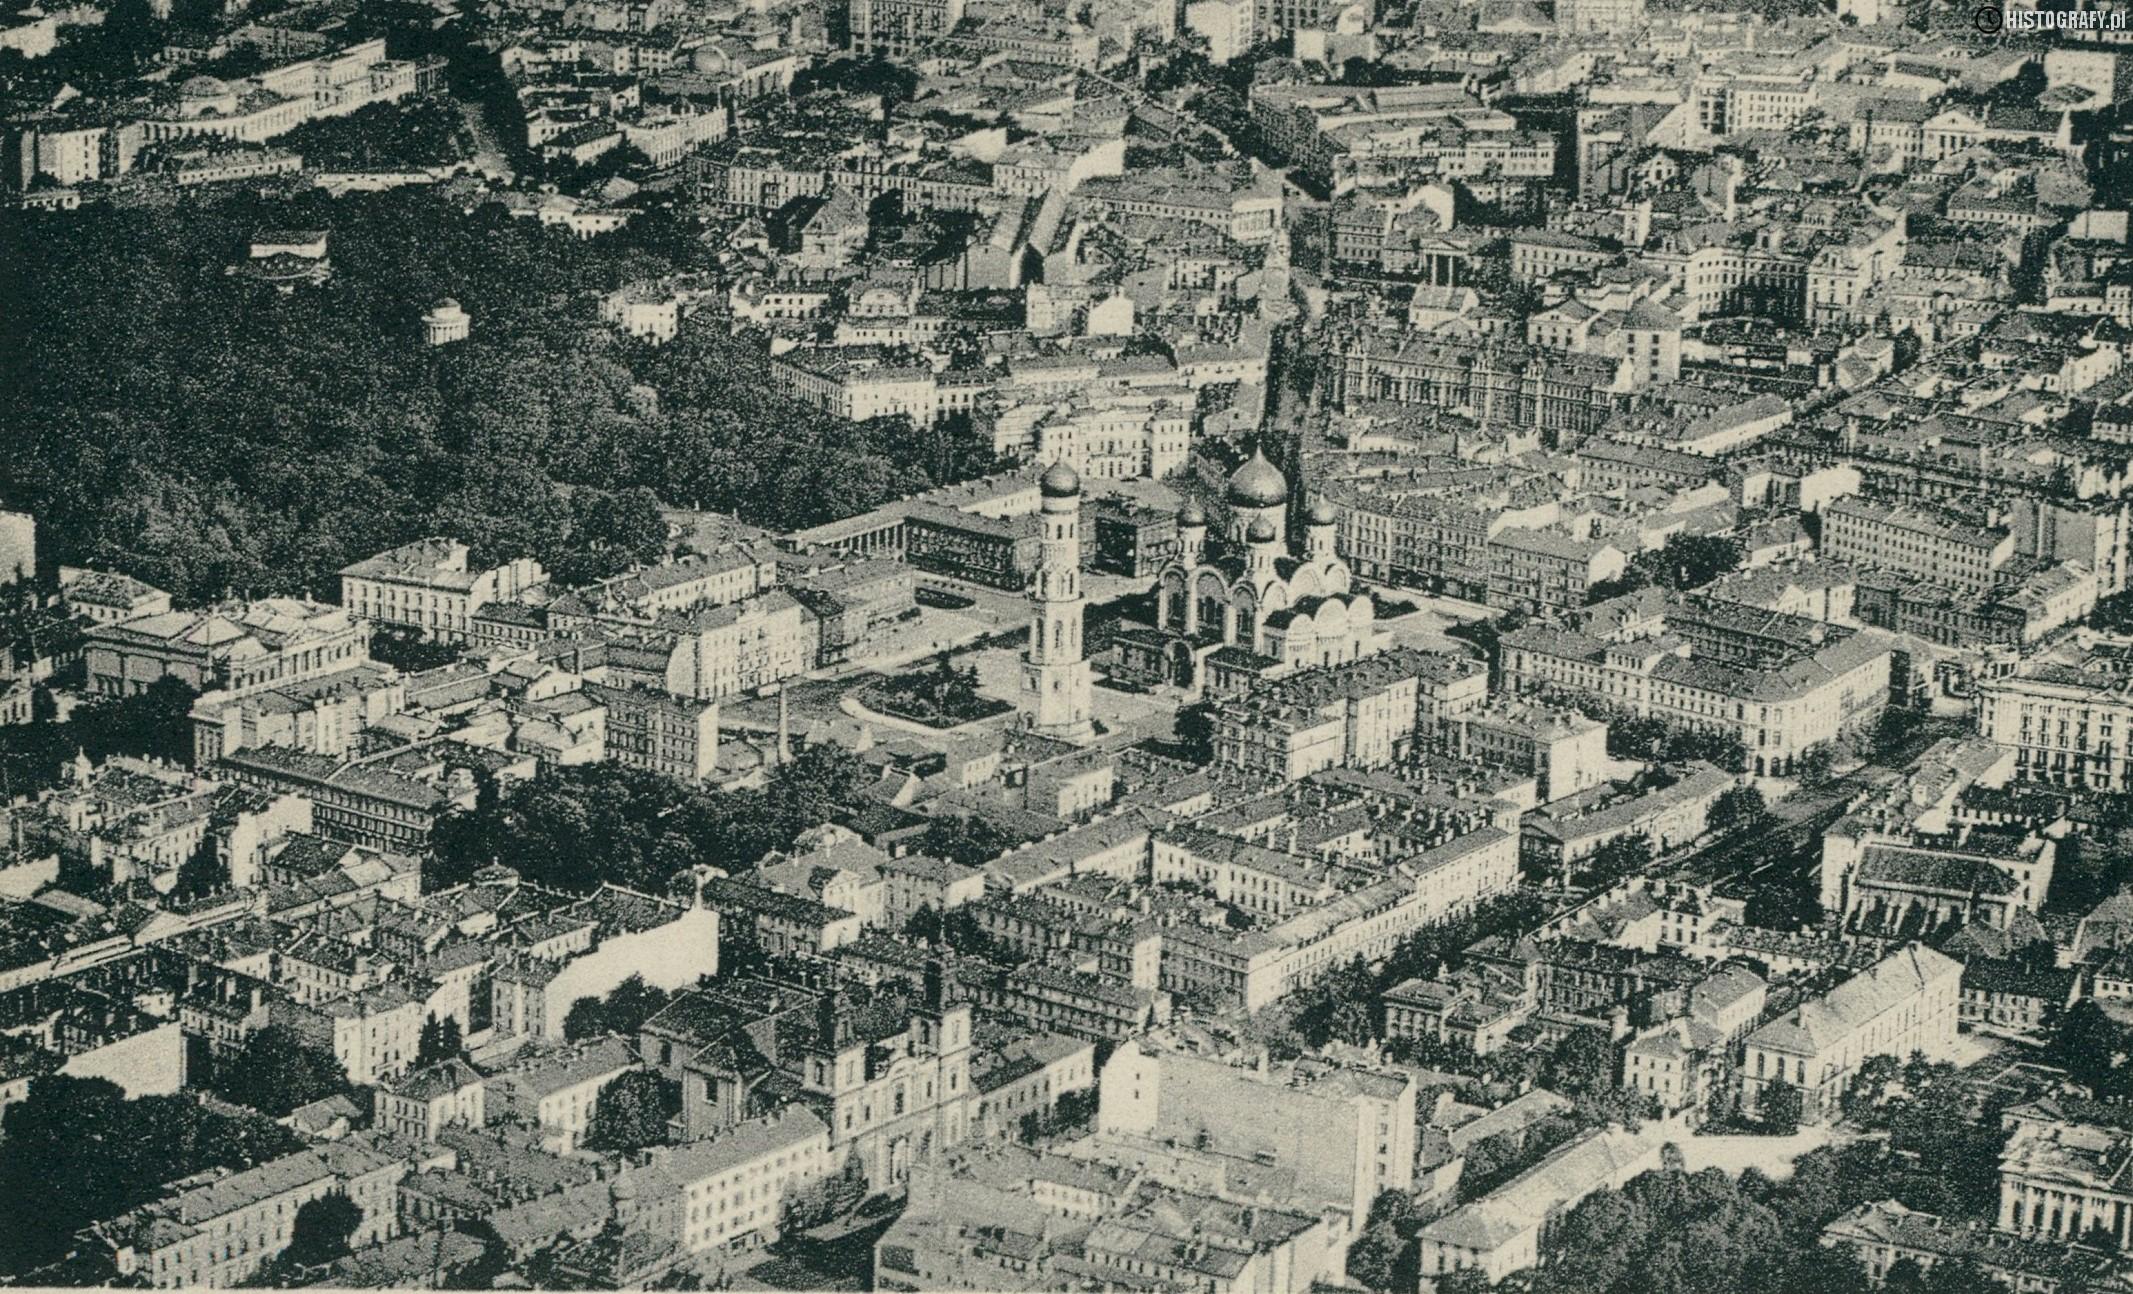 Panorama Warszawy z 1915 roku. Fot. Histografy.pl